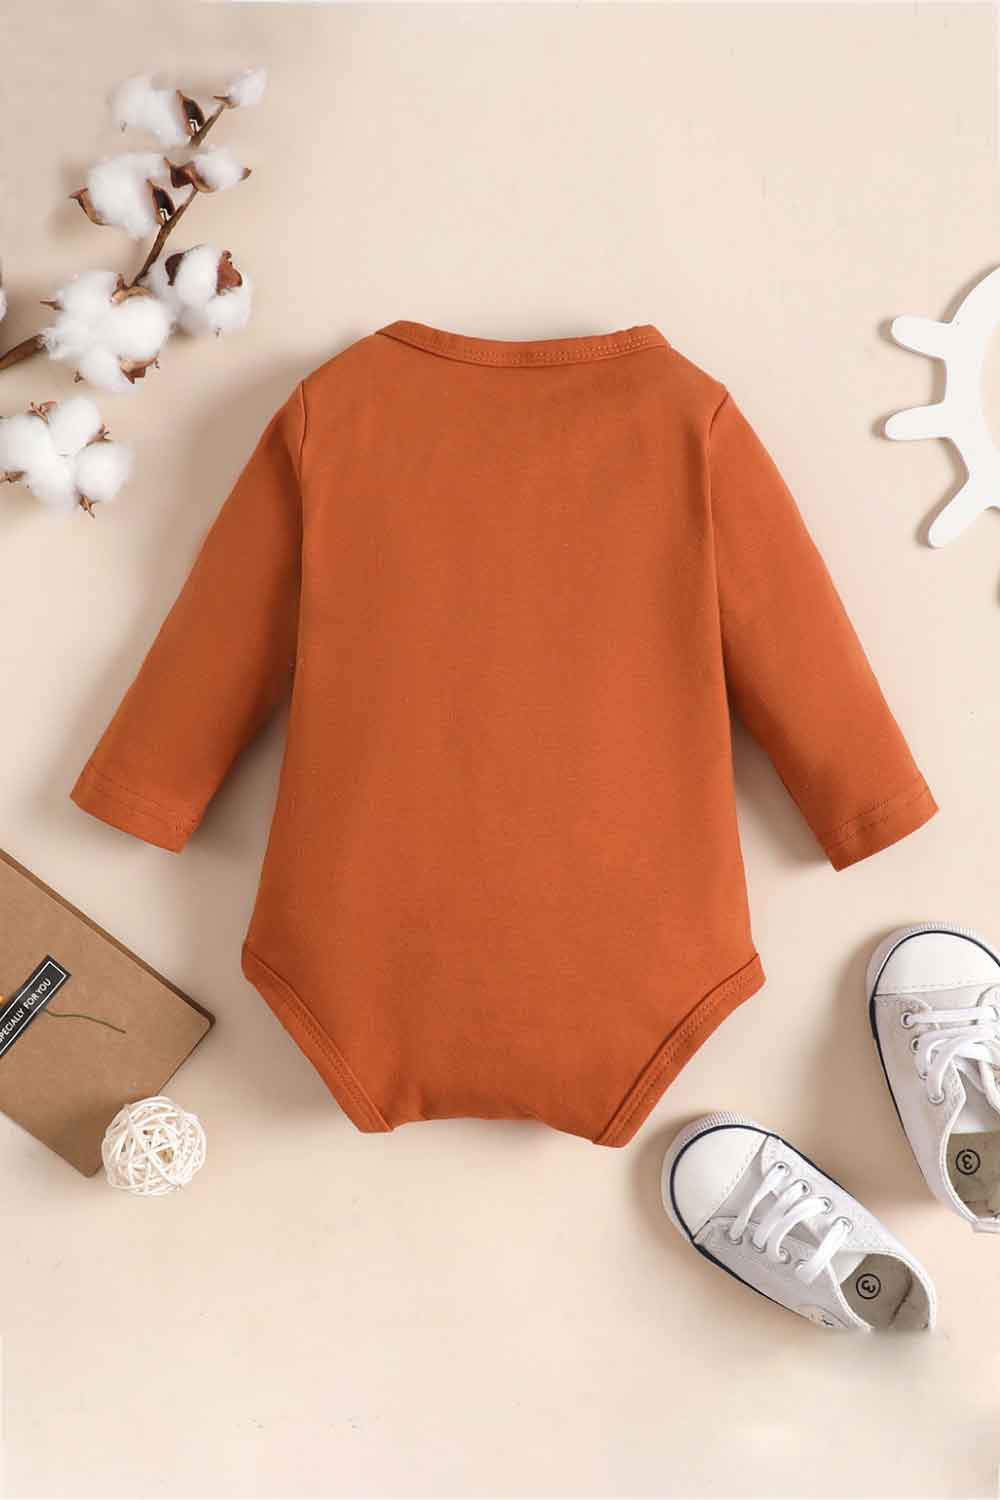 Baby Graphic Long Sleeve Bodysuit - DromedarShop.com Online Boutique